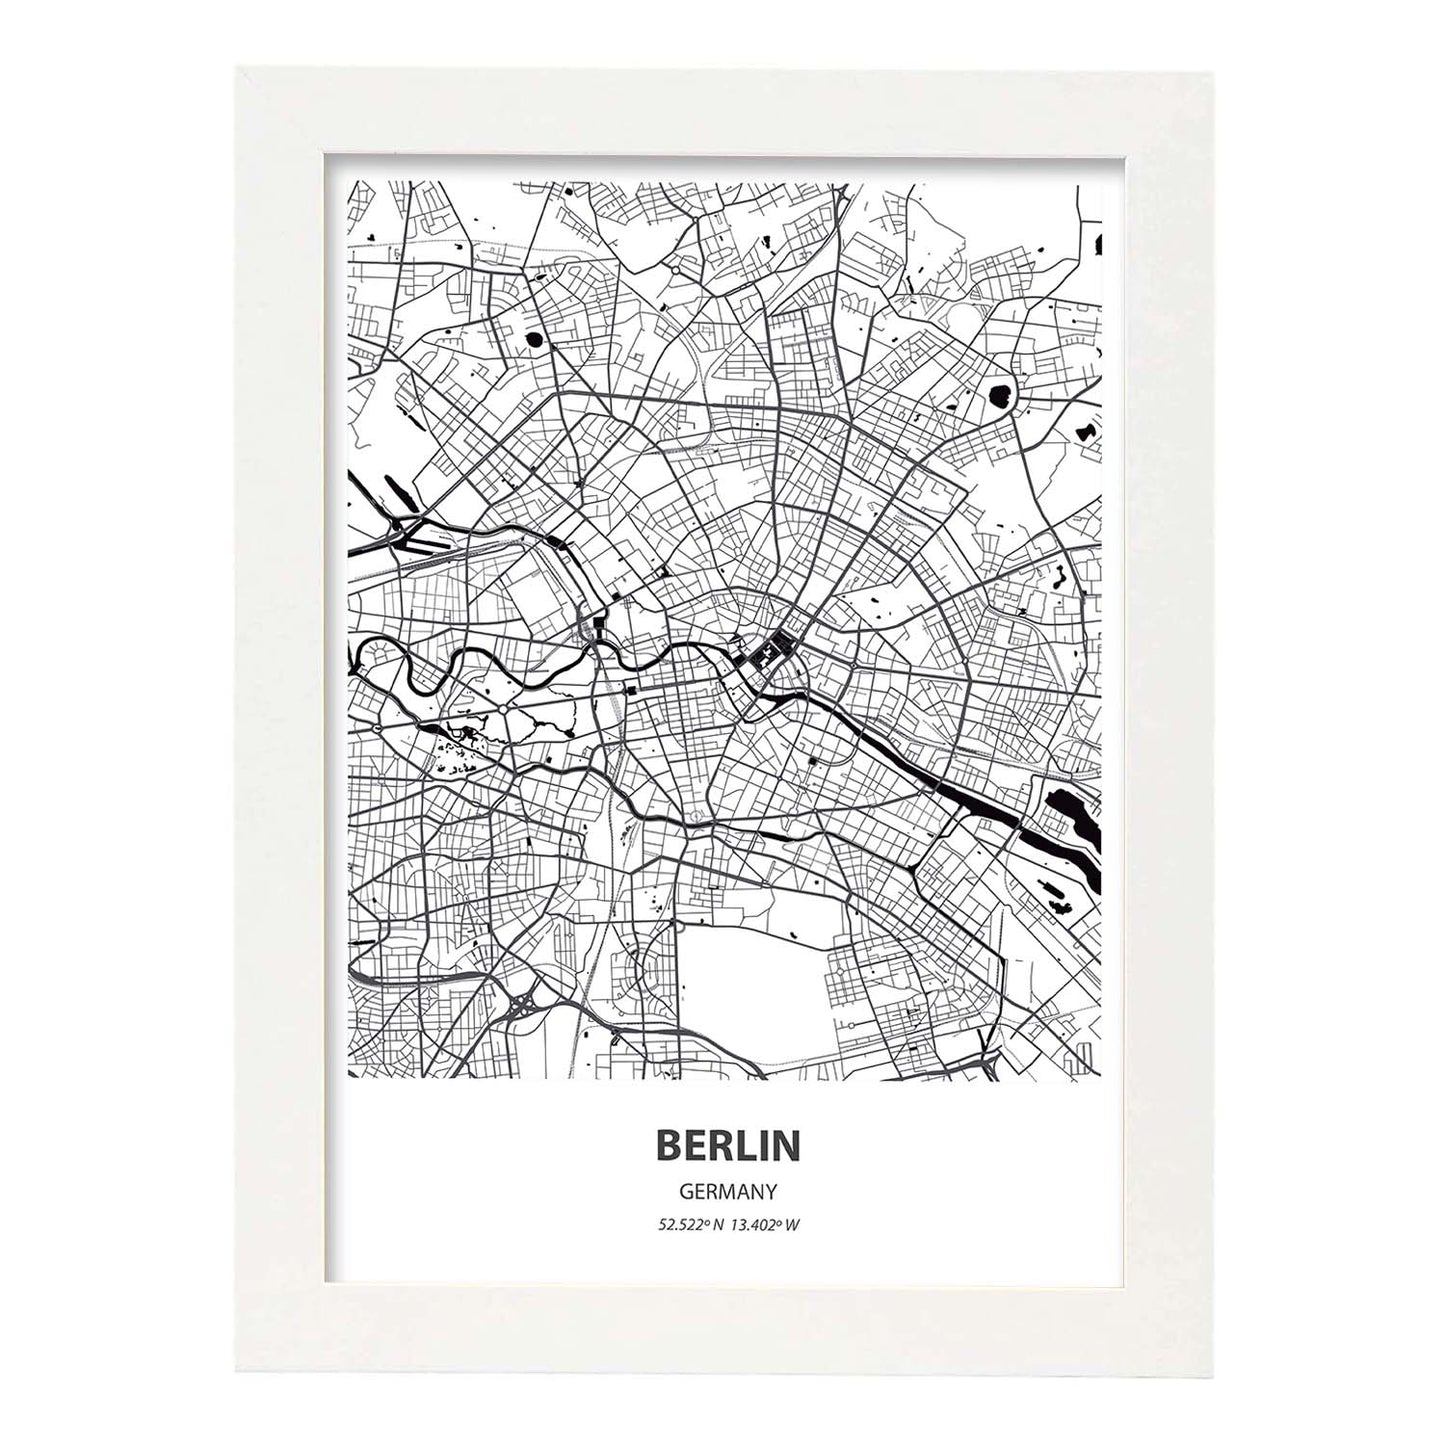 Poster con mapa de Berlin - Alemania. Láminas de ciudades de Alemania con mares y ríos en color negro.-Artwork-Nacnic-A4-Marco Blanco-Nacnic Estudio SL